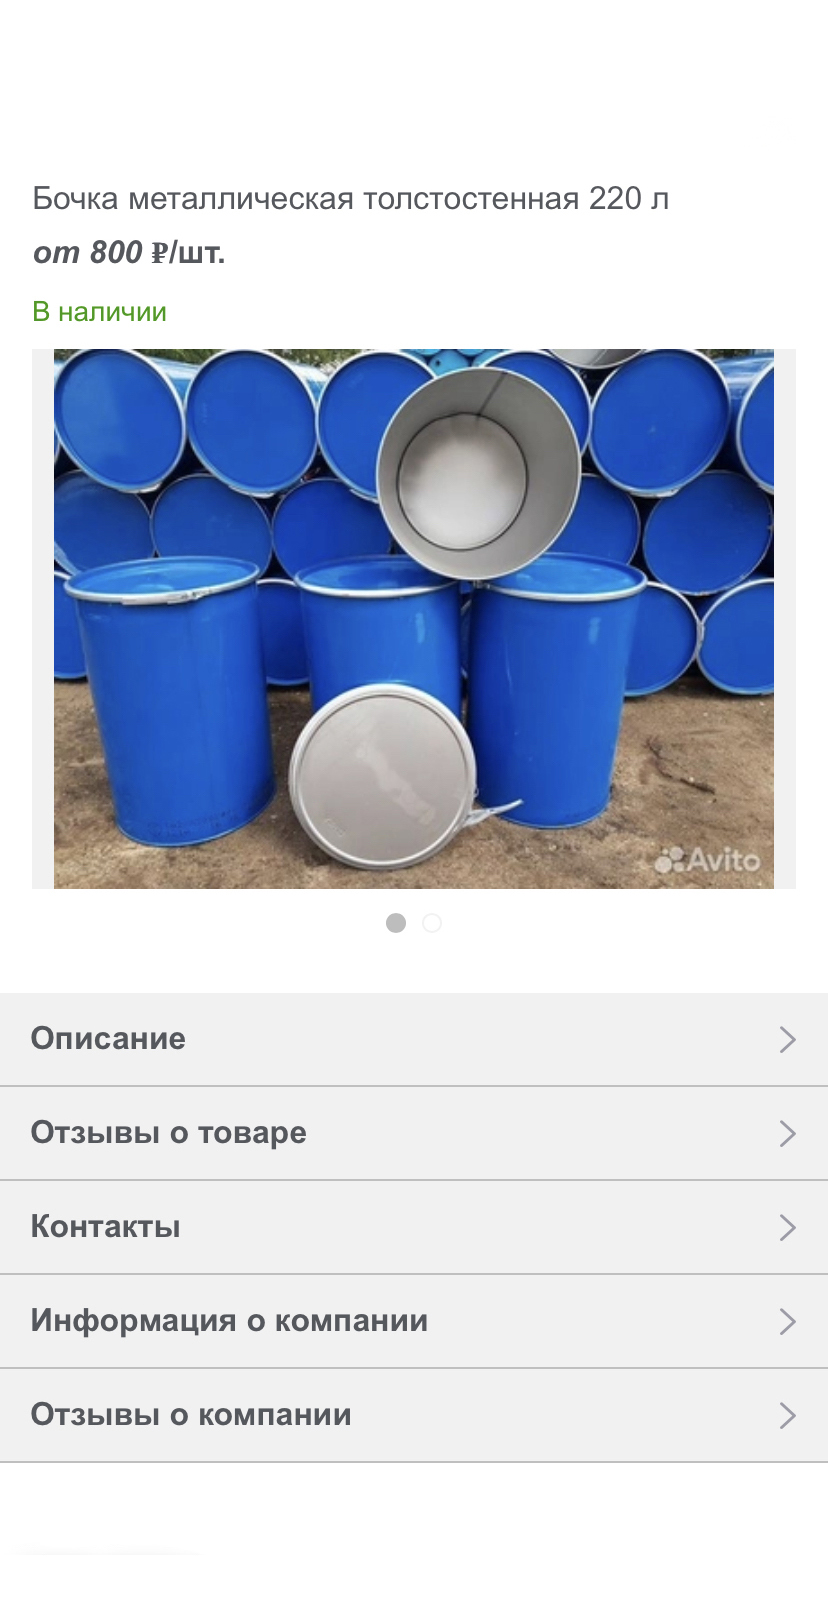 Толстостенная железная бочка для сжигания мусора Источник: мега-дача.рф